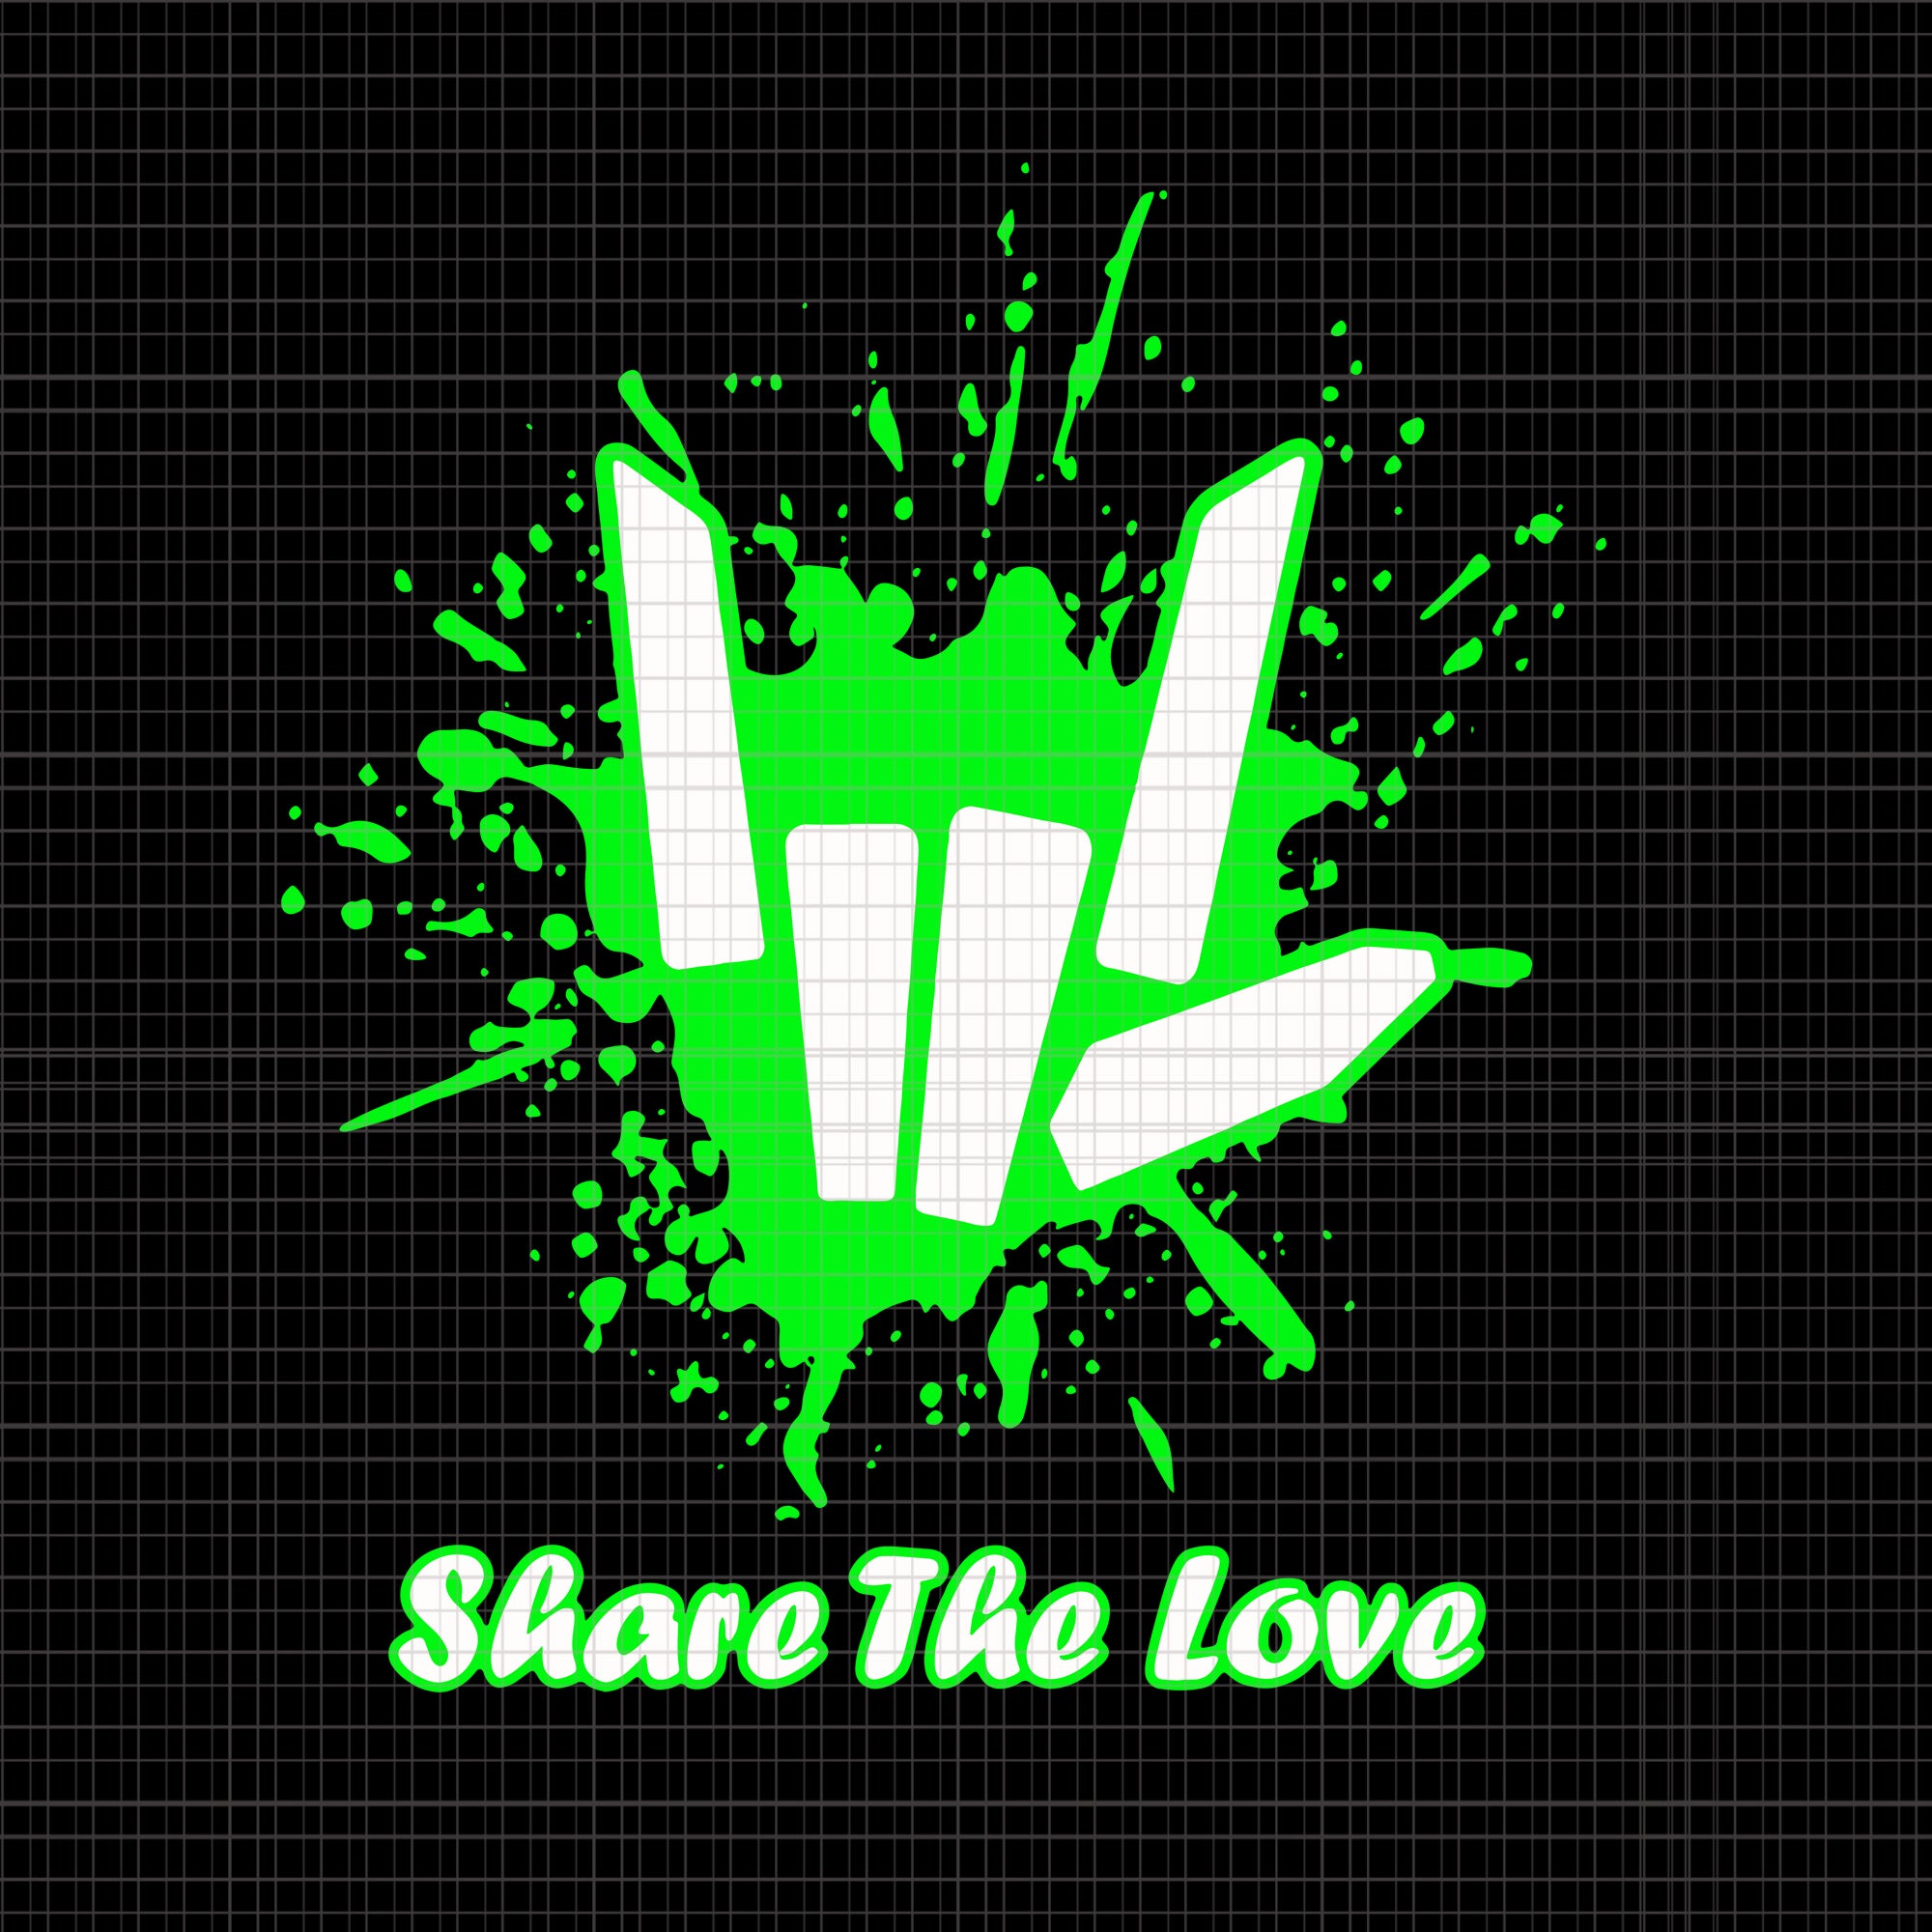 Share the love svg, share the love png, share the love patrick day, patrick day svg